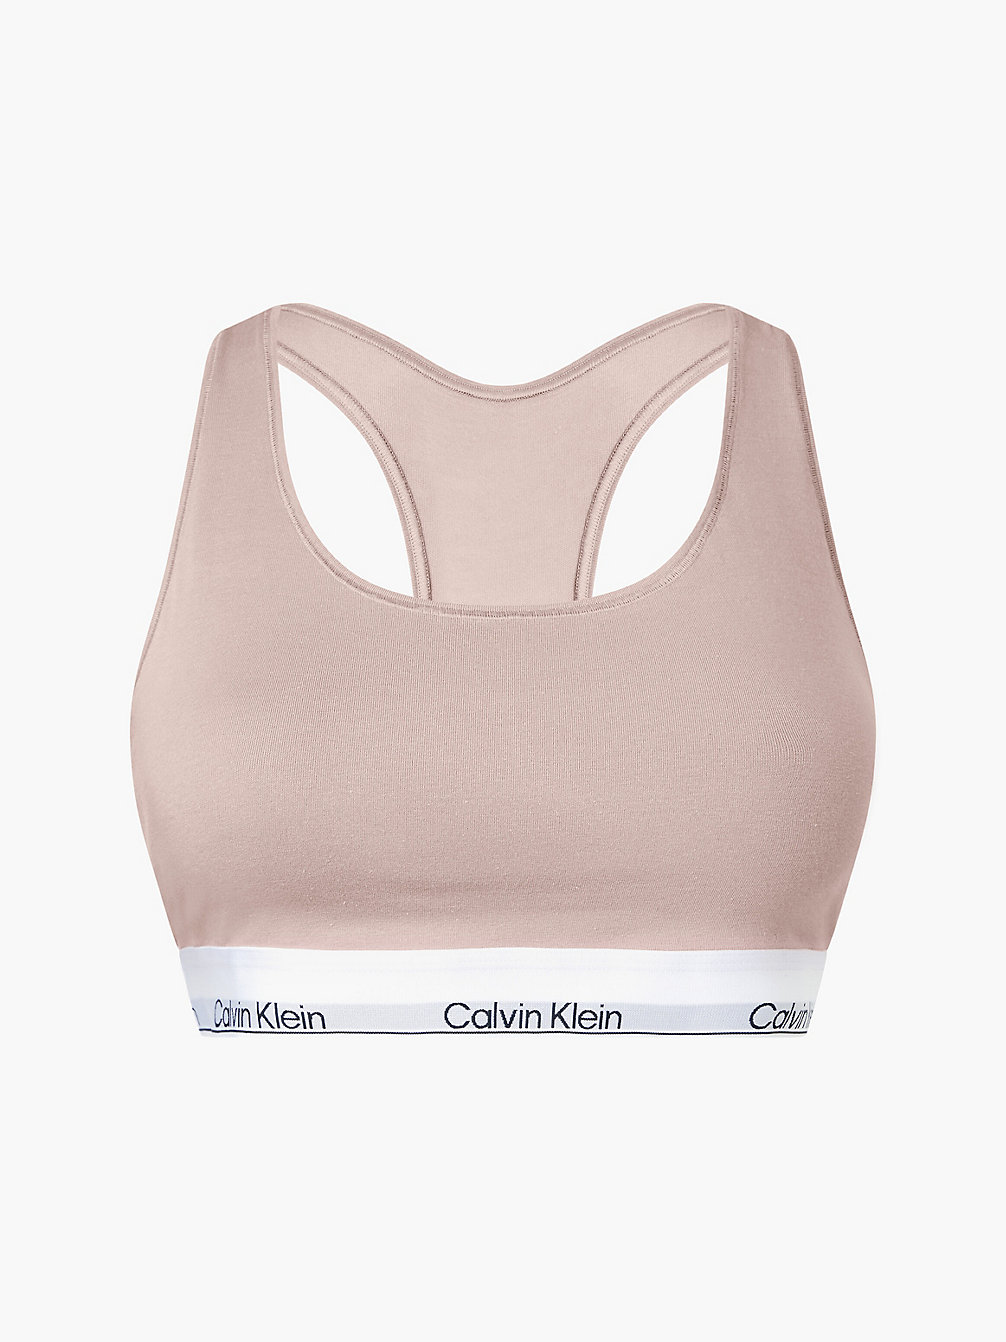 CEDAR Plus Size Bralette - Modern Cotton undefined women Calvin Klein